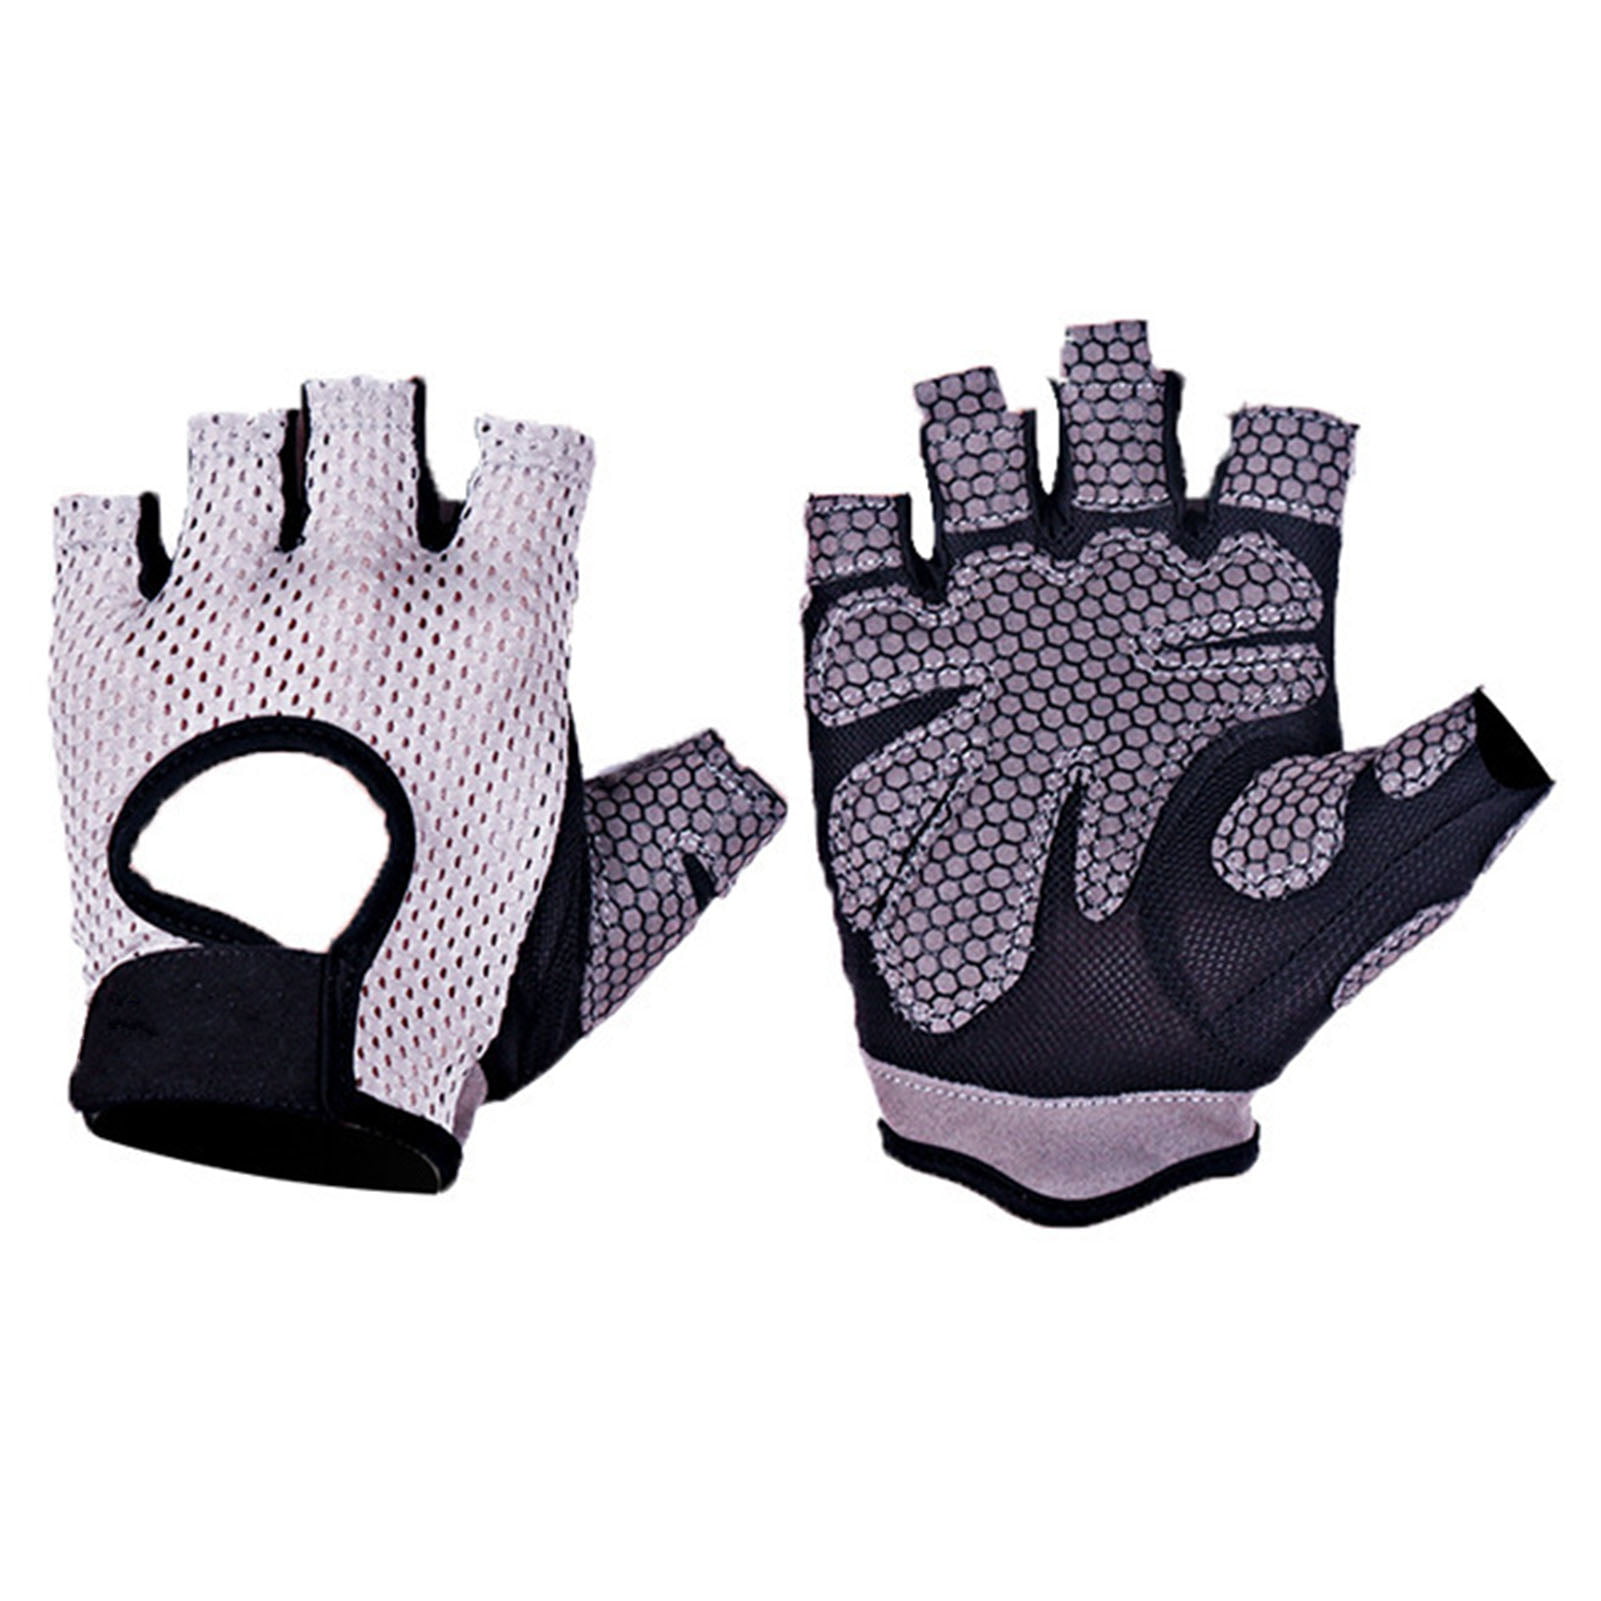 NEW Yoga Fingerless Non Anti Slip Grip Sticky Gloves Sport Exercise Equipment G 